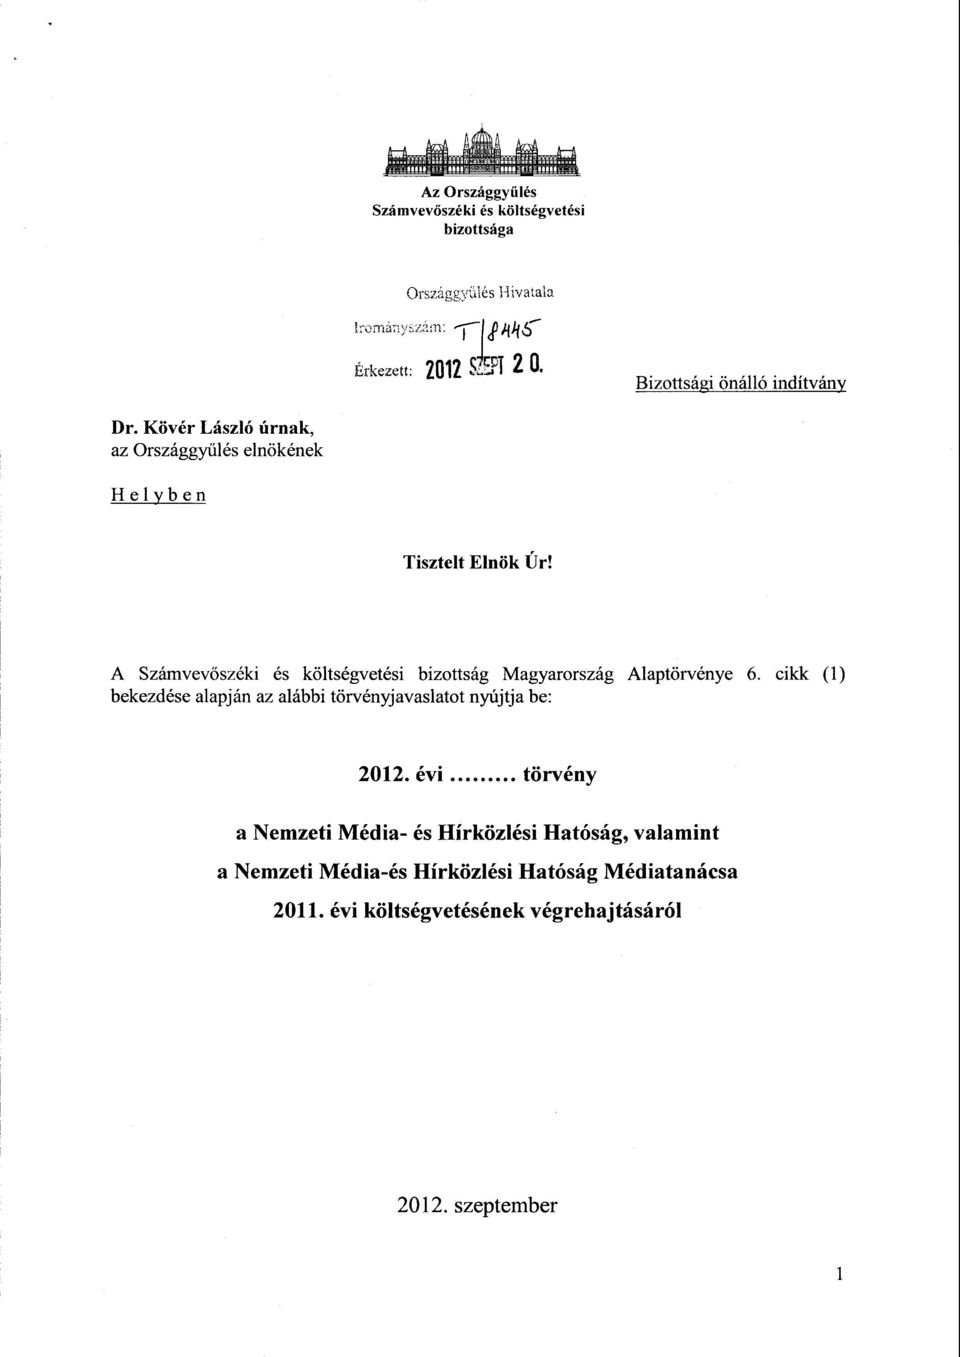 A Számvev őszéki és költségvetési bizottság Magyarország Alaptörvénye 6.